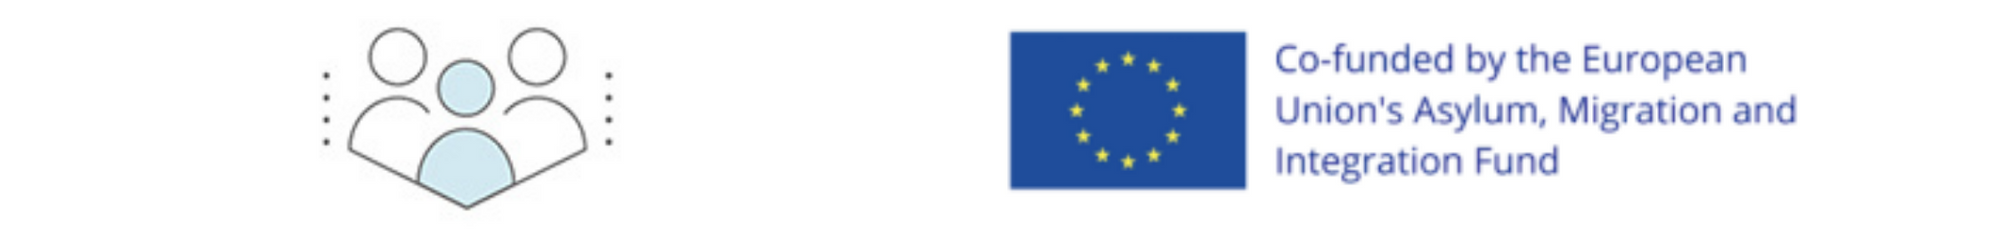 Passworld logo and EU AMIF logo